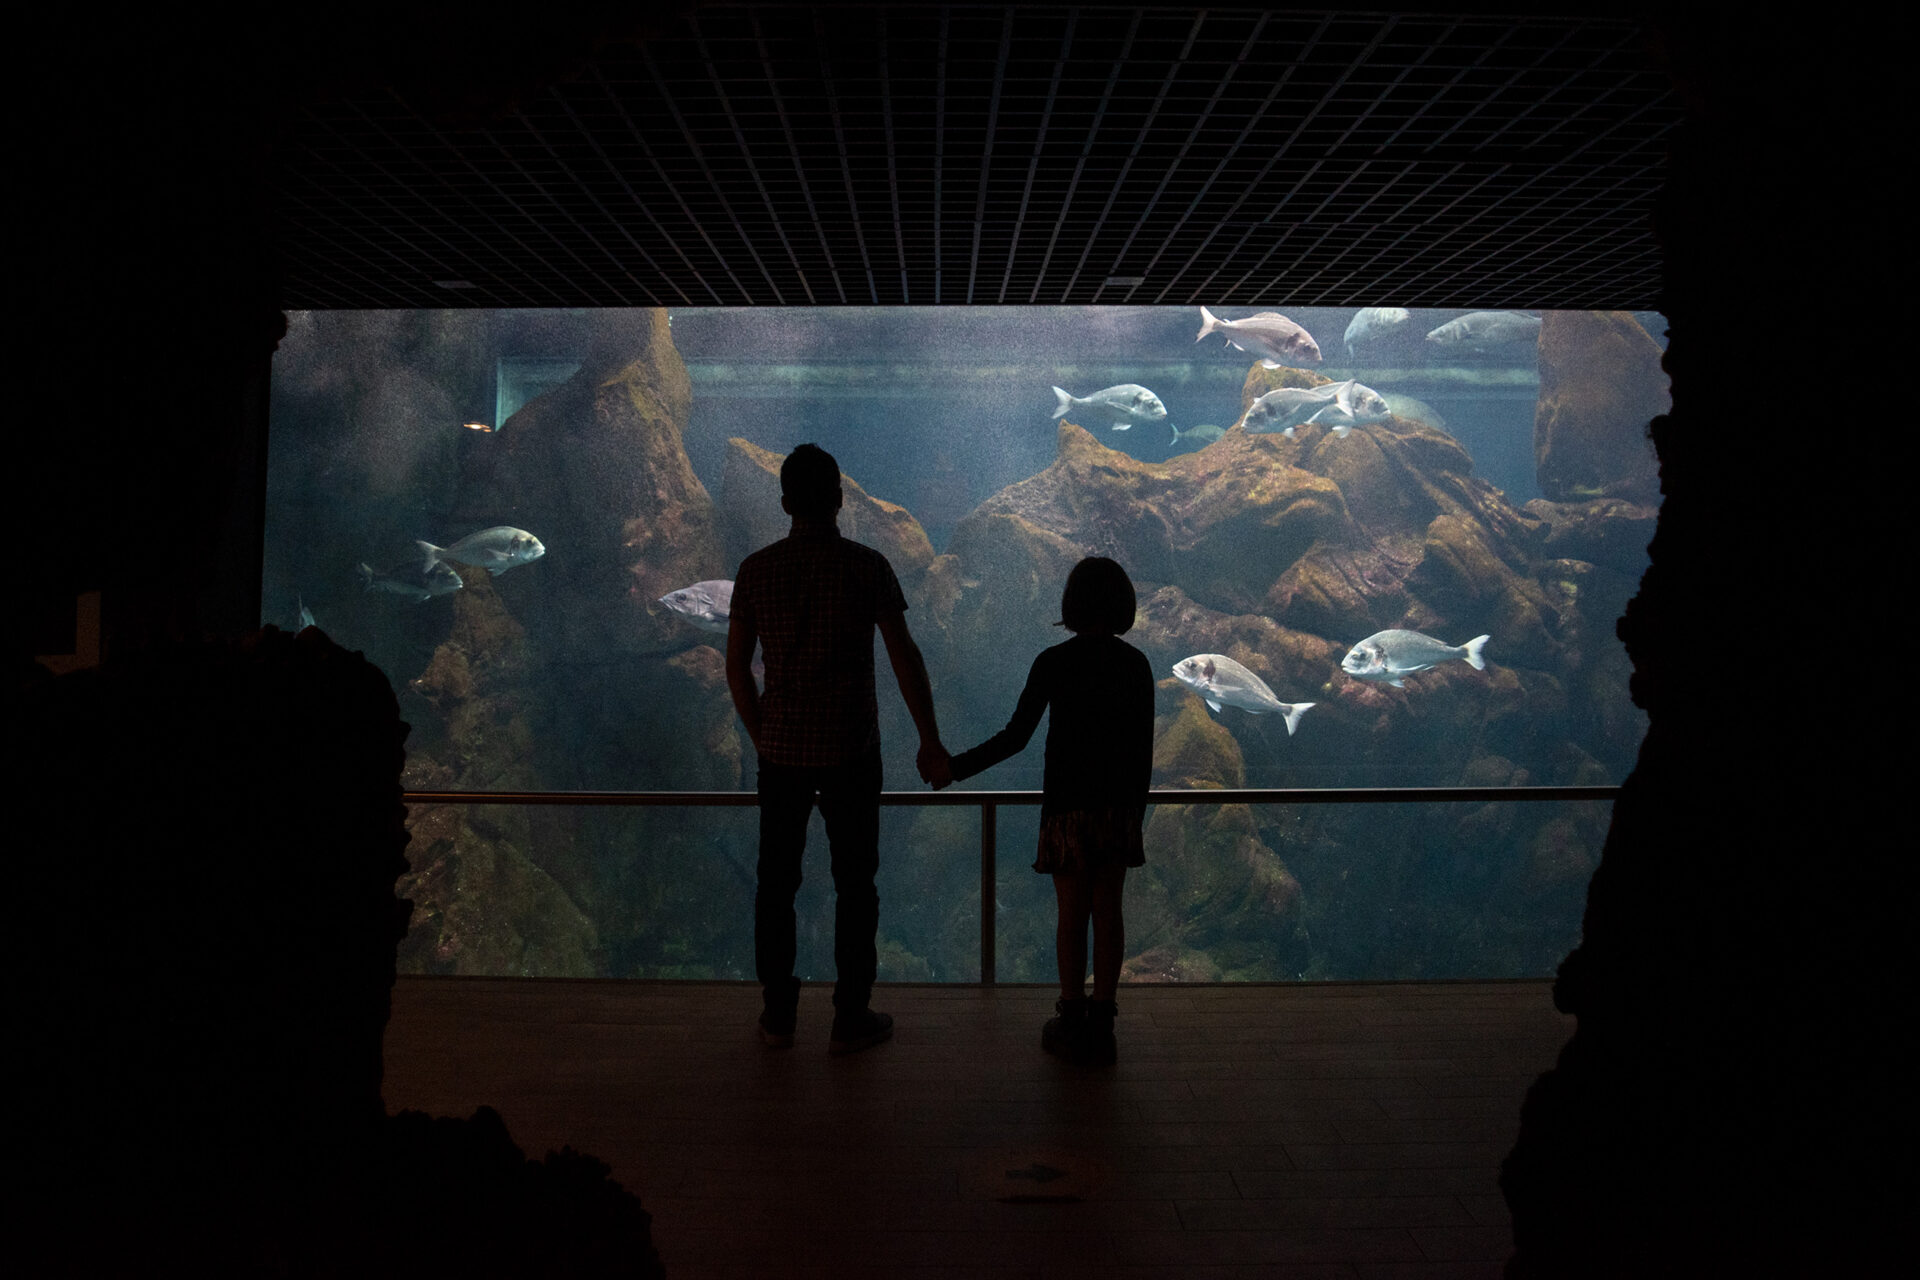 Immerse yourself in Livorno’s Aquarium